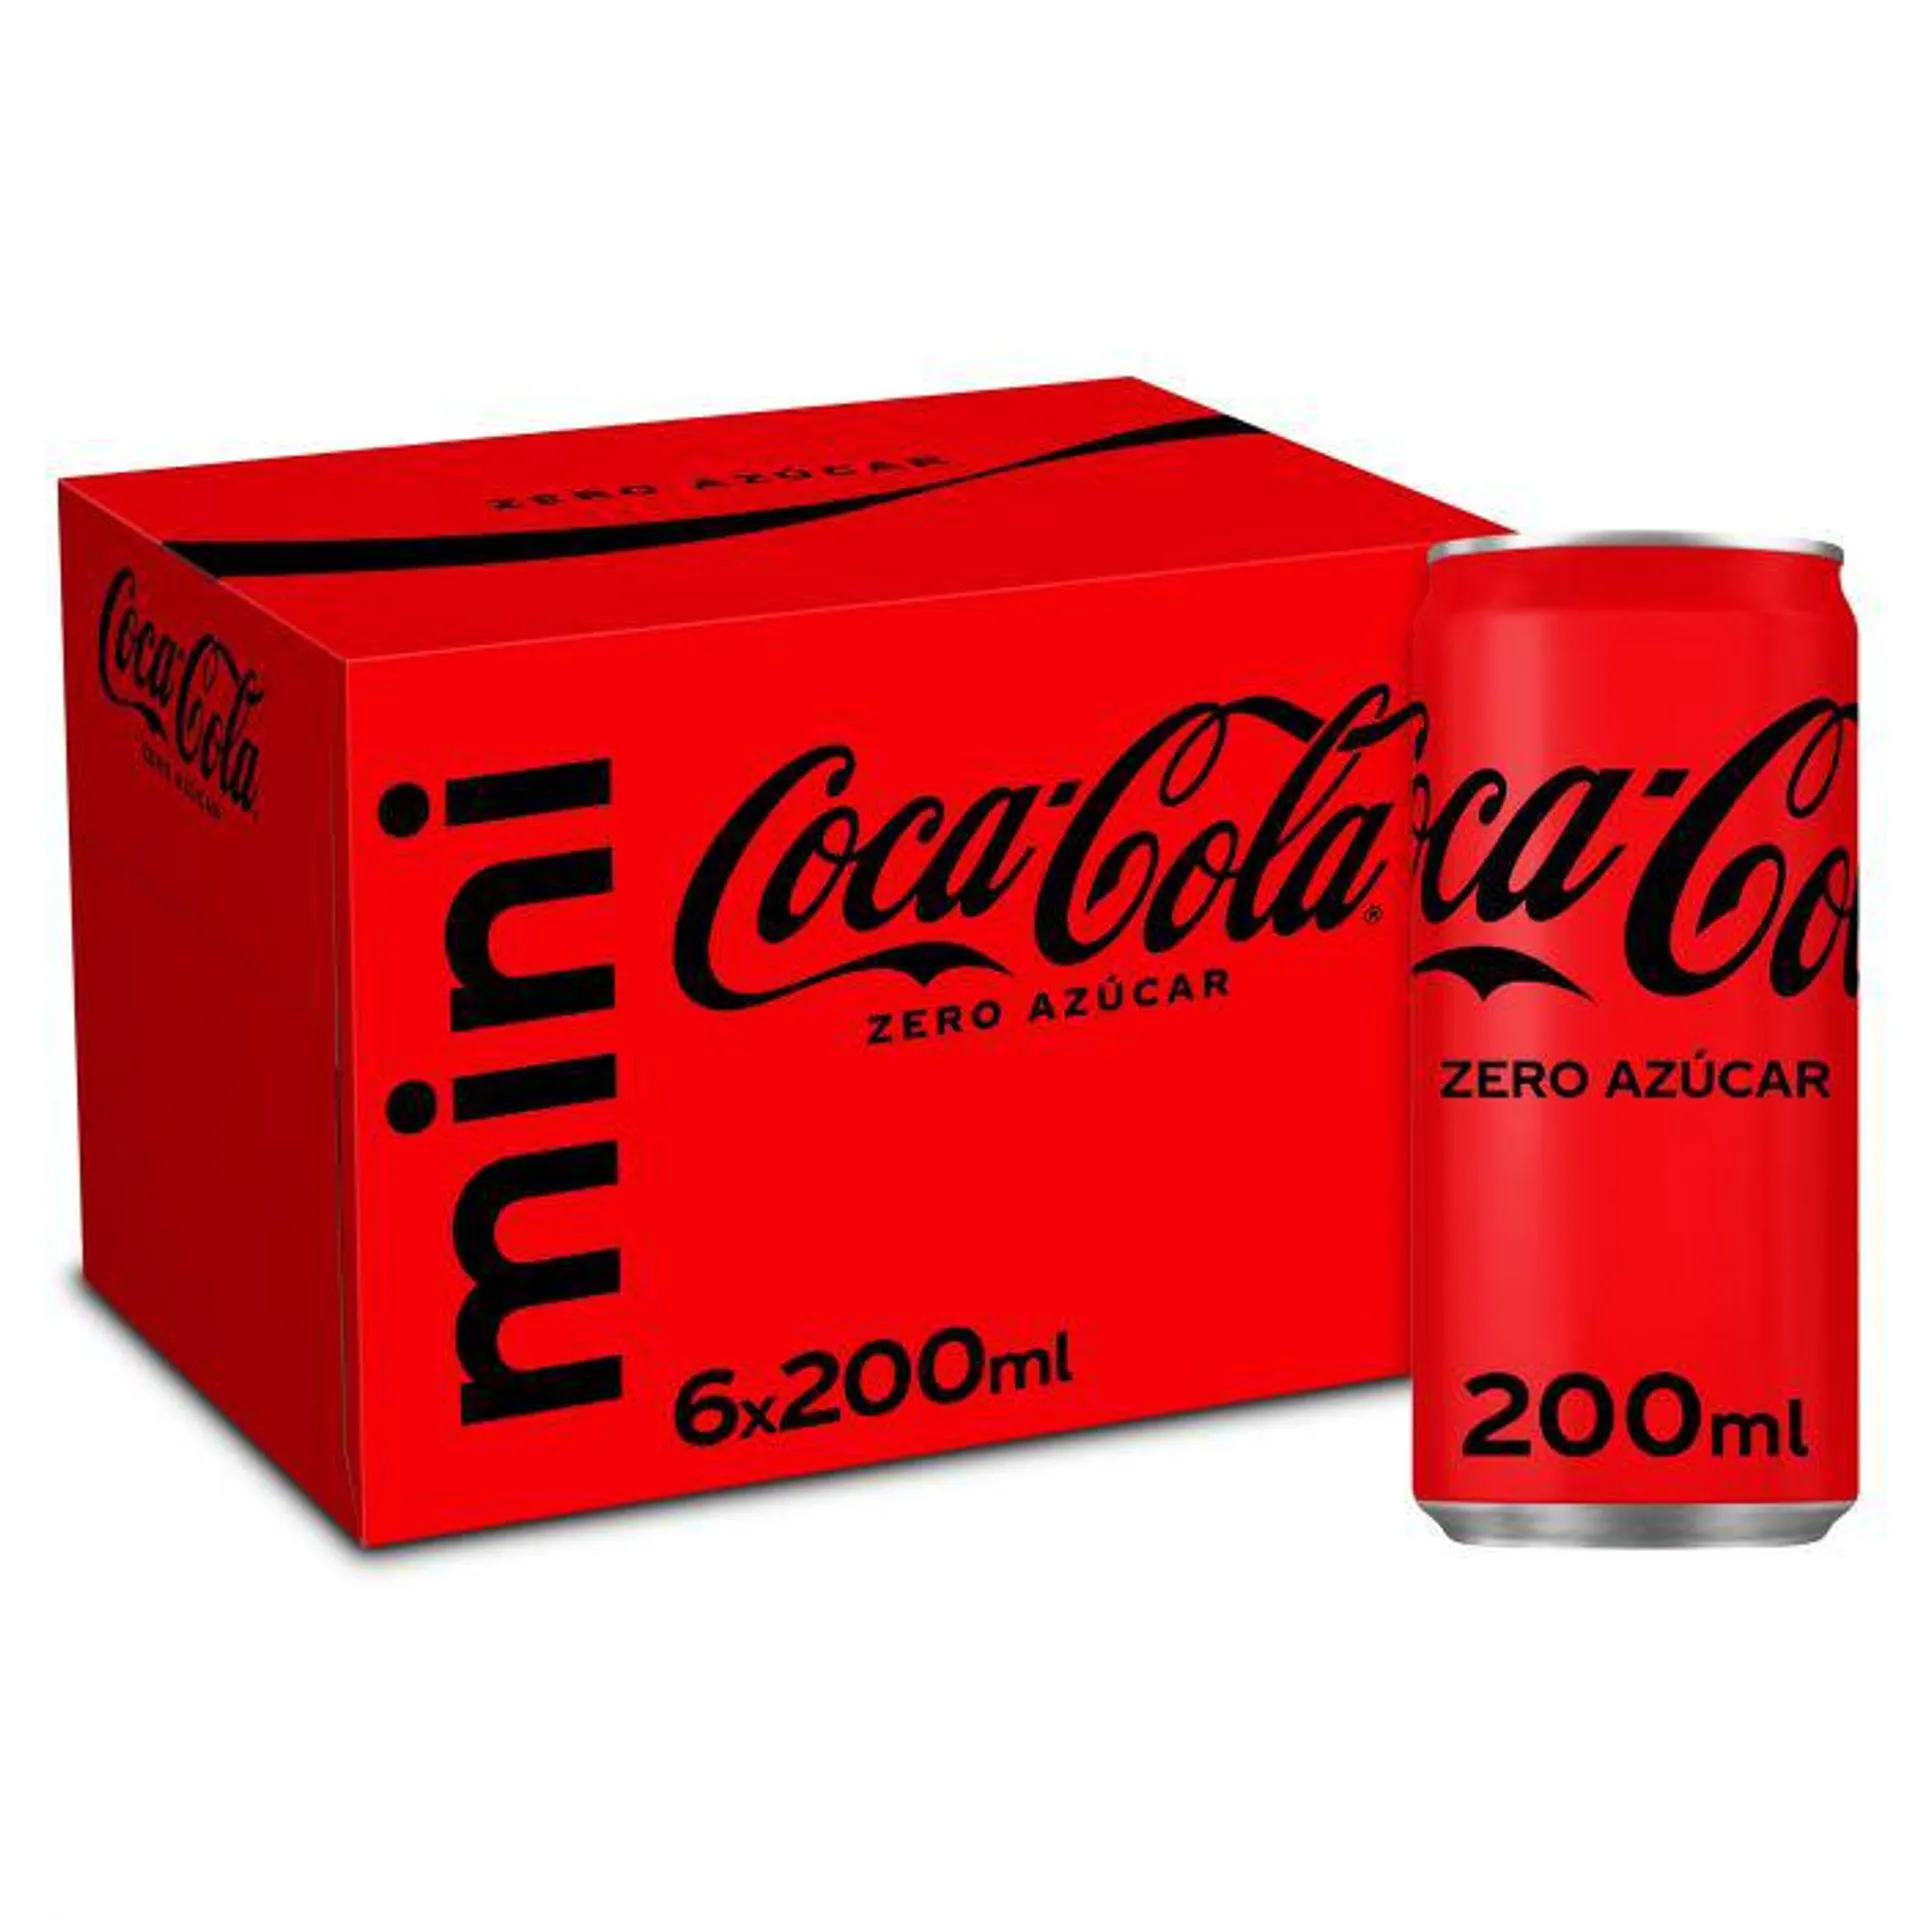 Refresco cola zero coca cola lata p-6x20cl